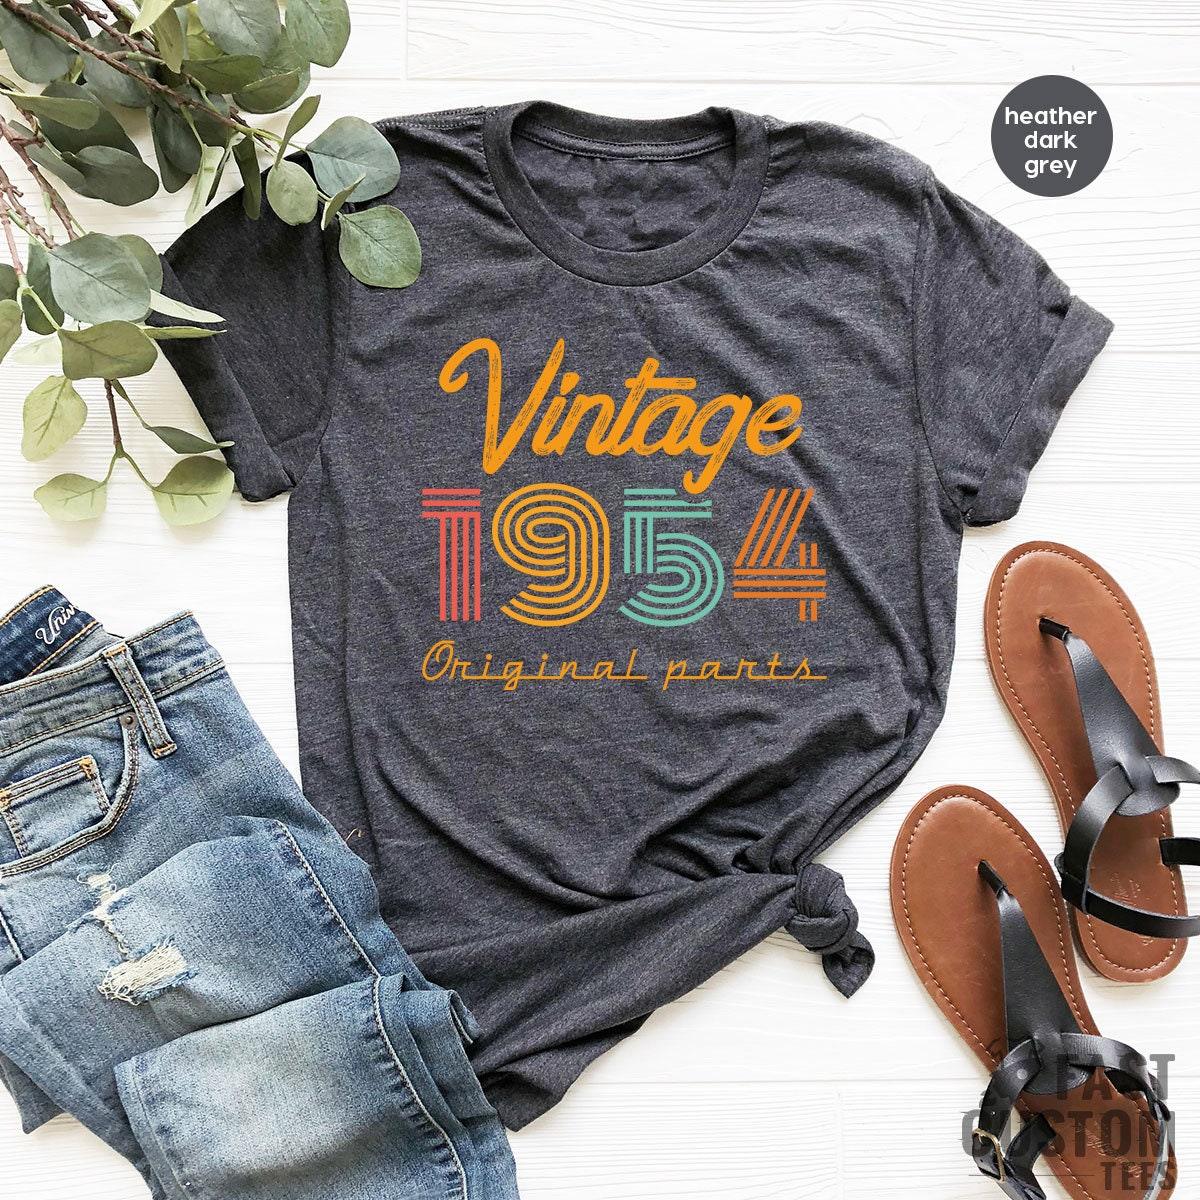 67th Birthday Shirt, Vintage T Shirt, Vintage 1954 Shirt, 67th Birthday Gift For Women, 67th Birthday Shirt Men, Retro Shirt, Vintage Shirts - Fastdeliverytees.com